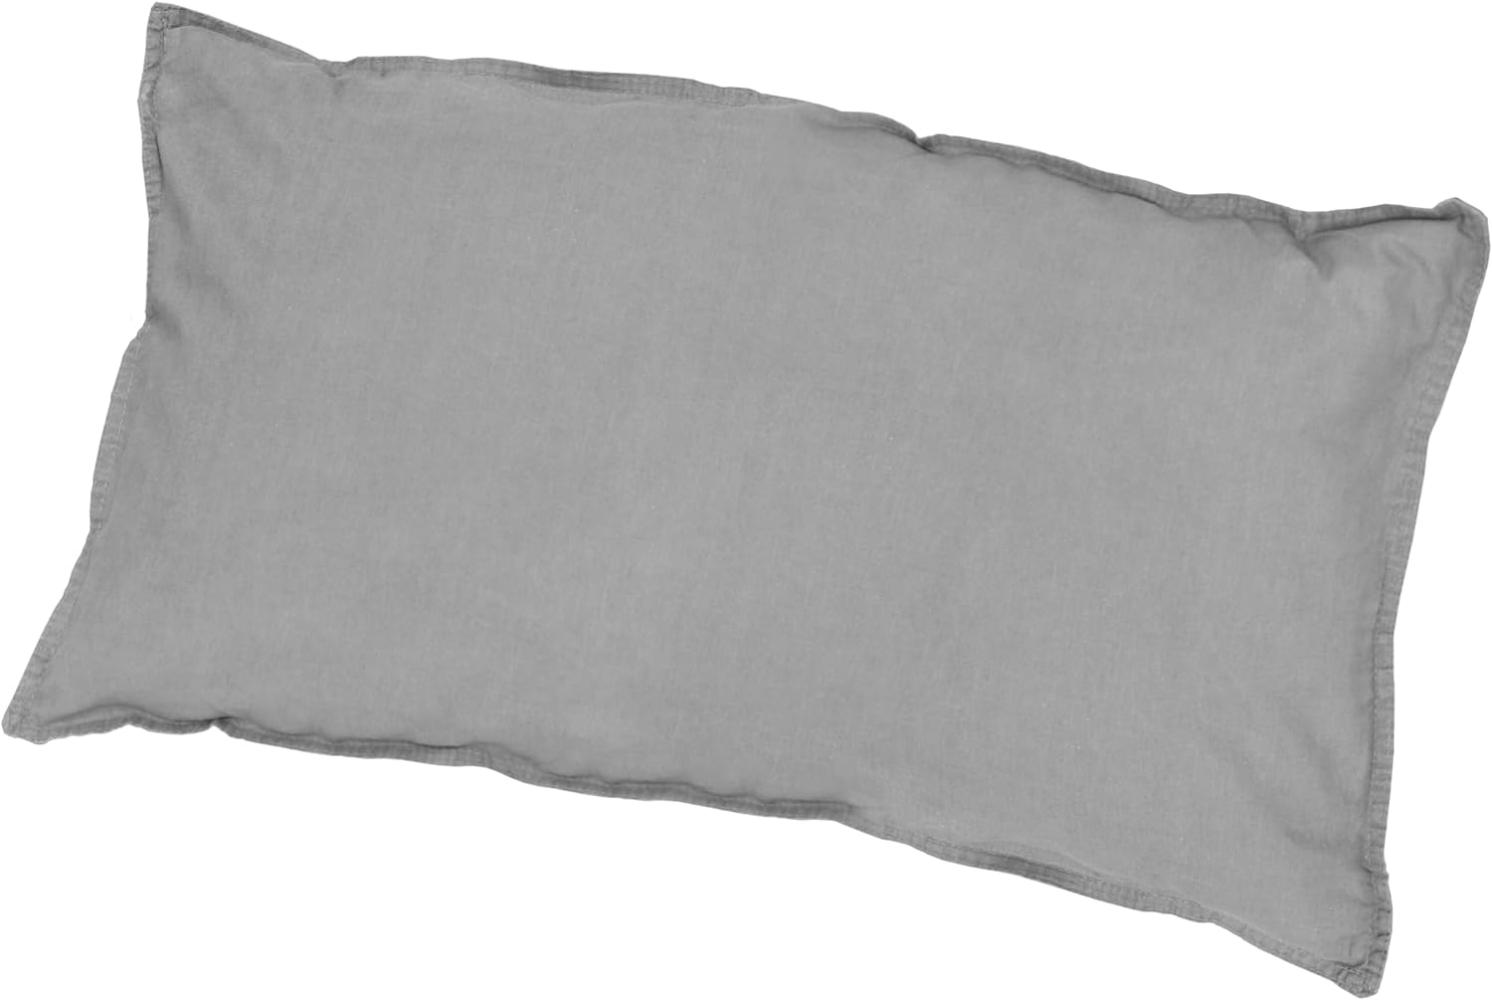 Traumhaft gut schlafen Stone-Washed-Bettwäsche aus 100% Baumwolle, in versch. Farben und Größen : 40 x 80 cm : Stone Bild 1